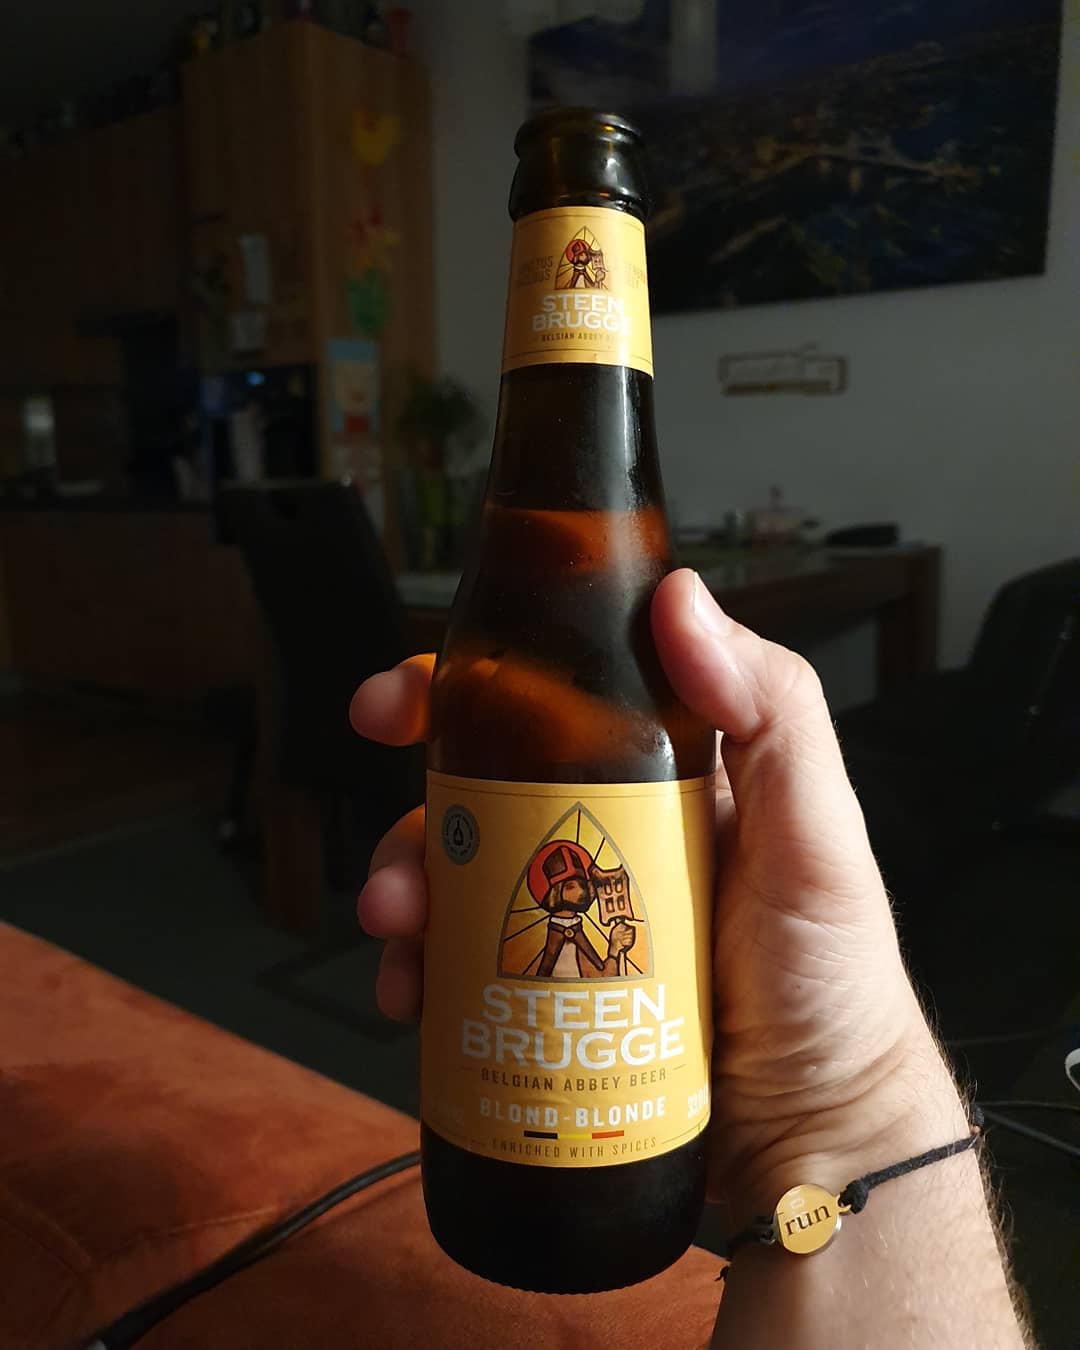 #craftbeer Post of the das

#beerlovers 
#beer 
#bier